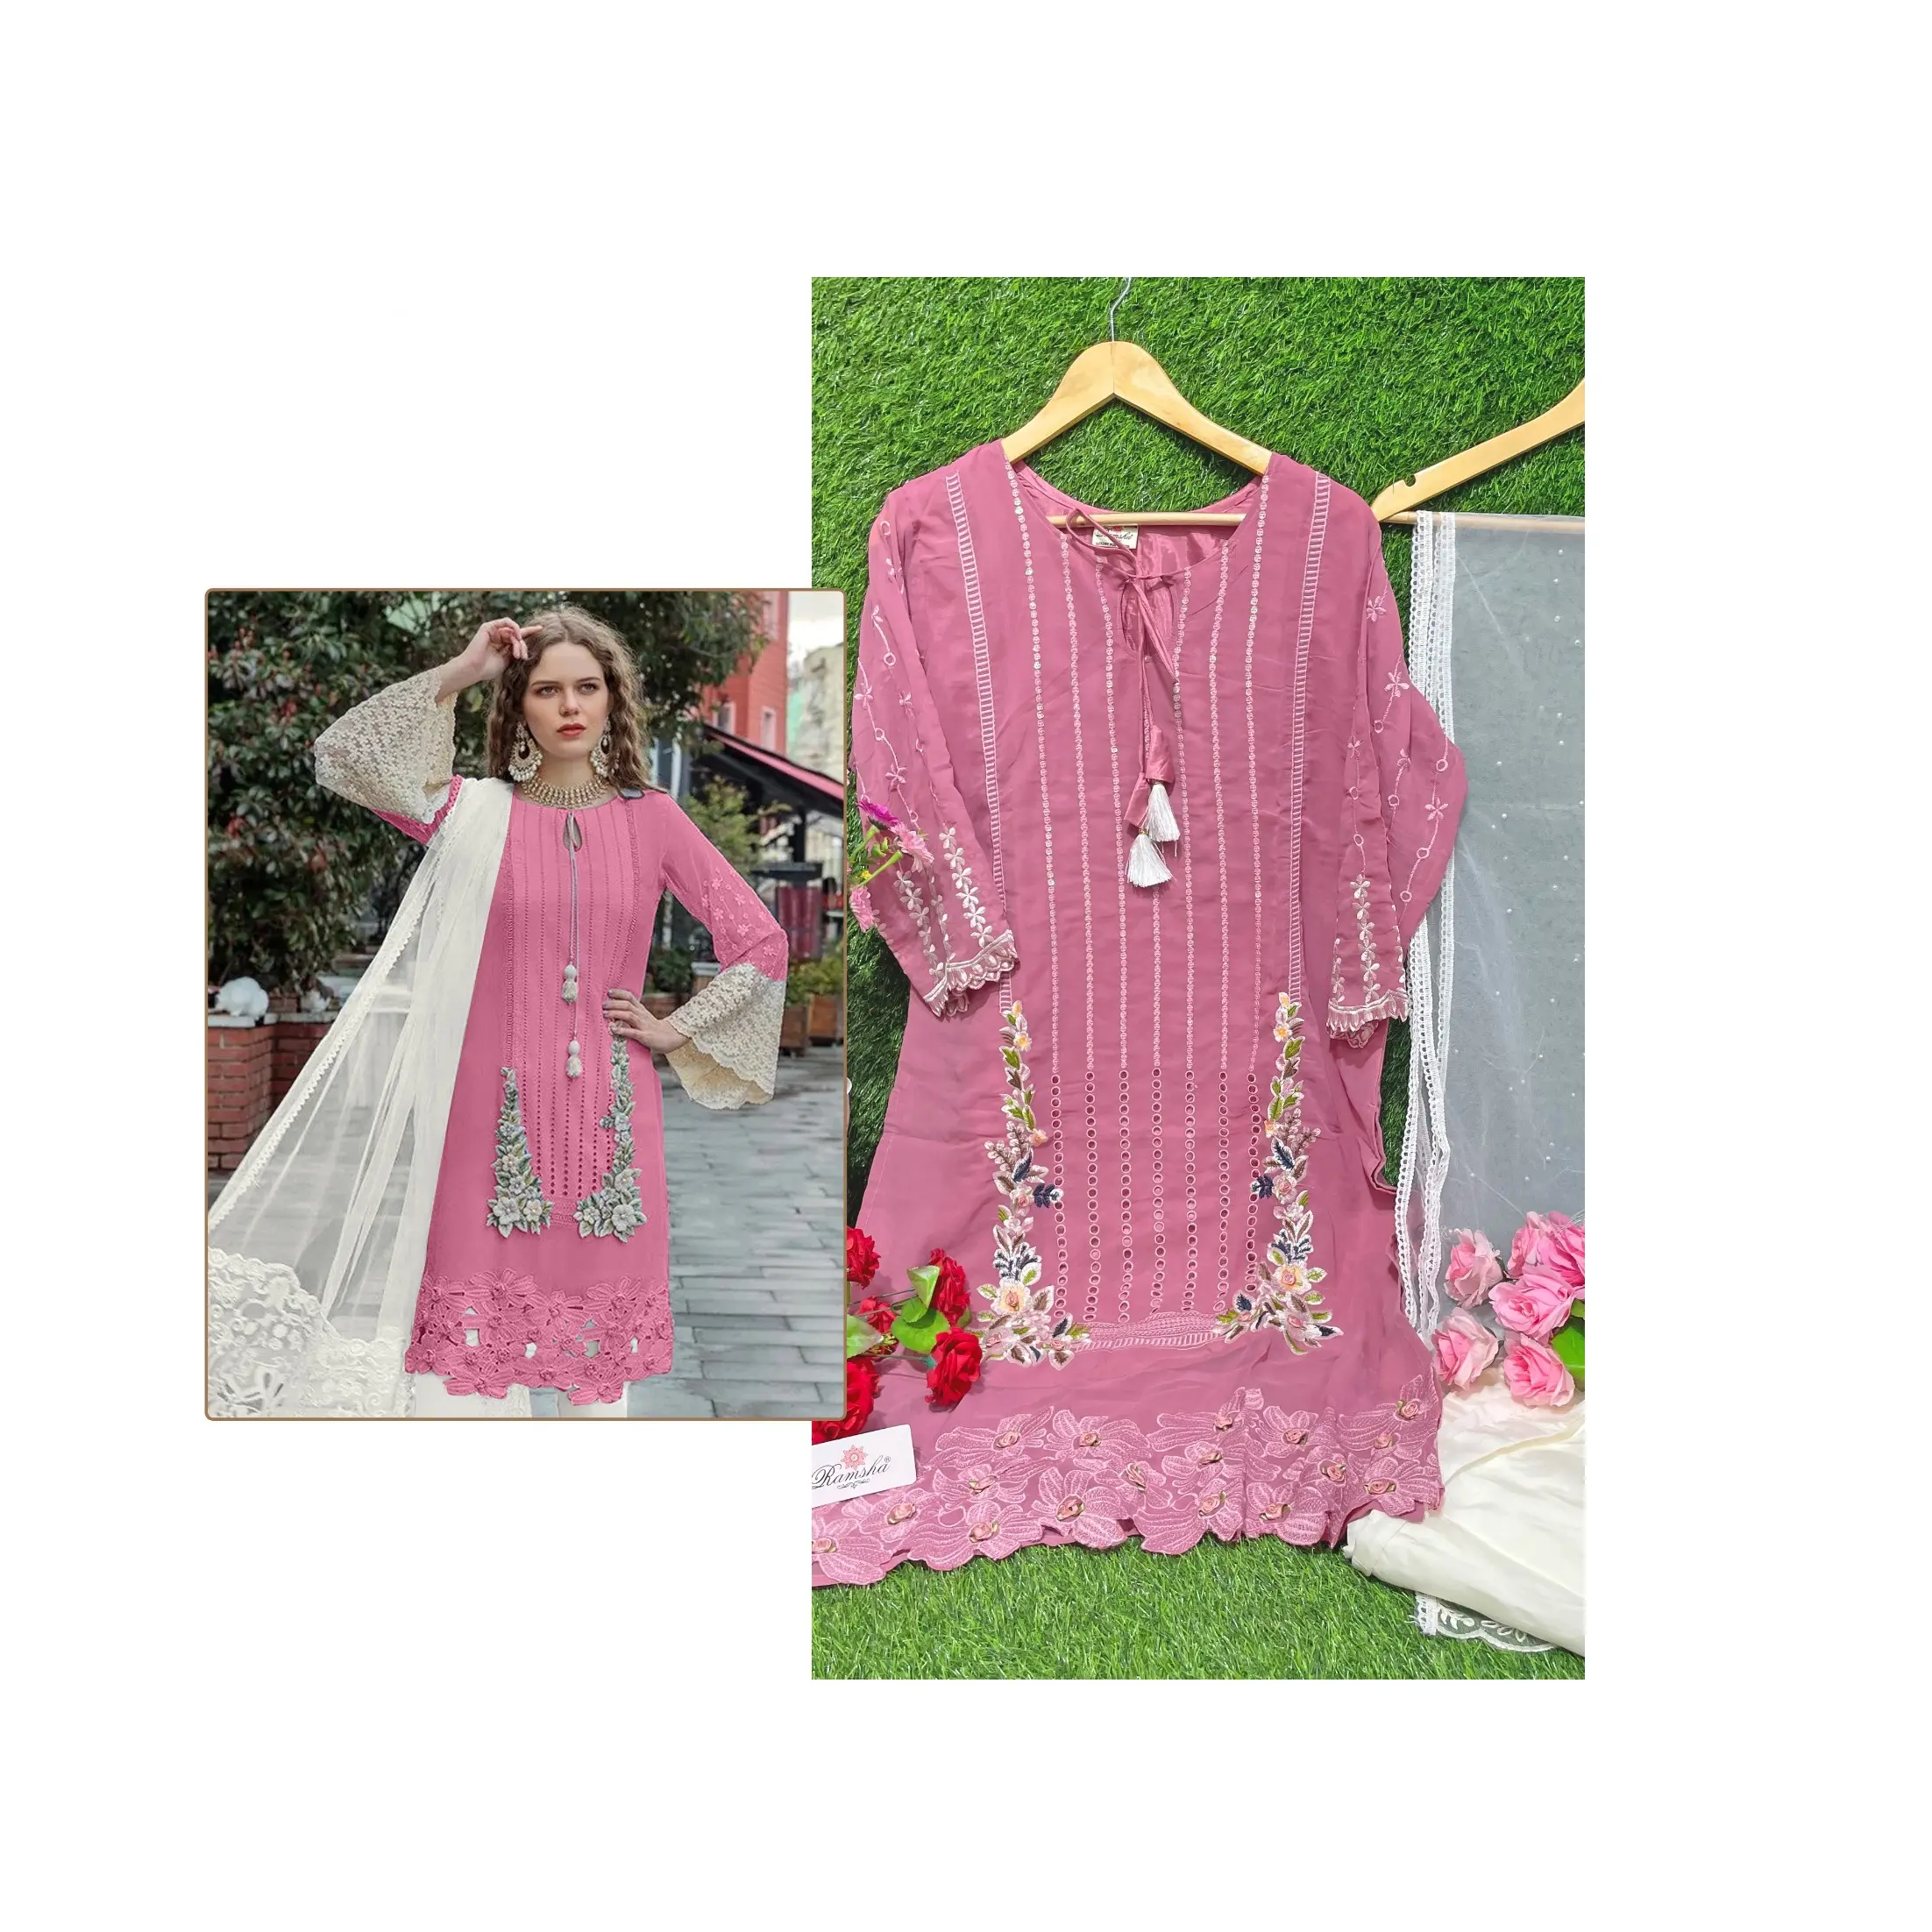 مصنع توريد بالجملة جورجيت التطريز باكستان ملابس الحفلات والزفاف بسعر الجملة